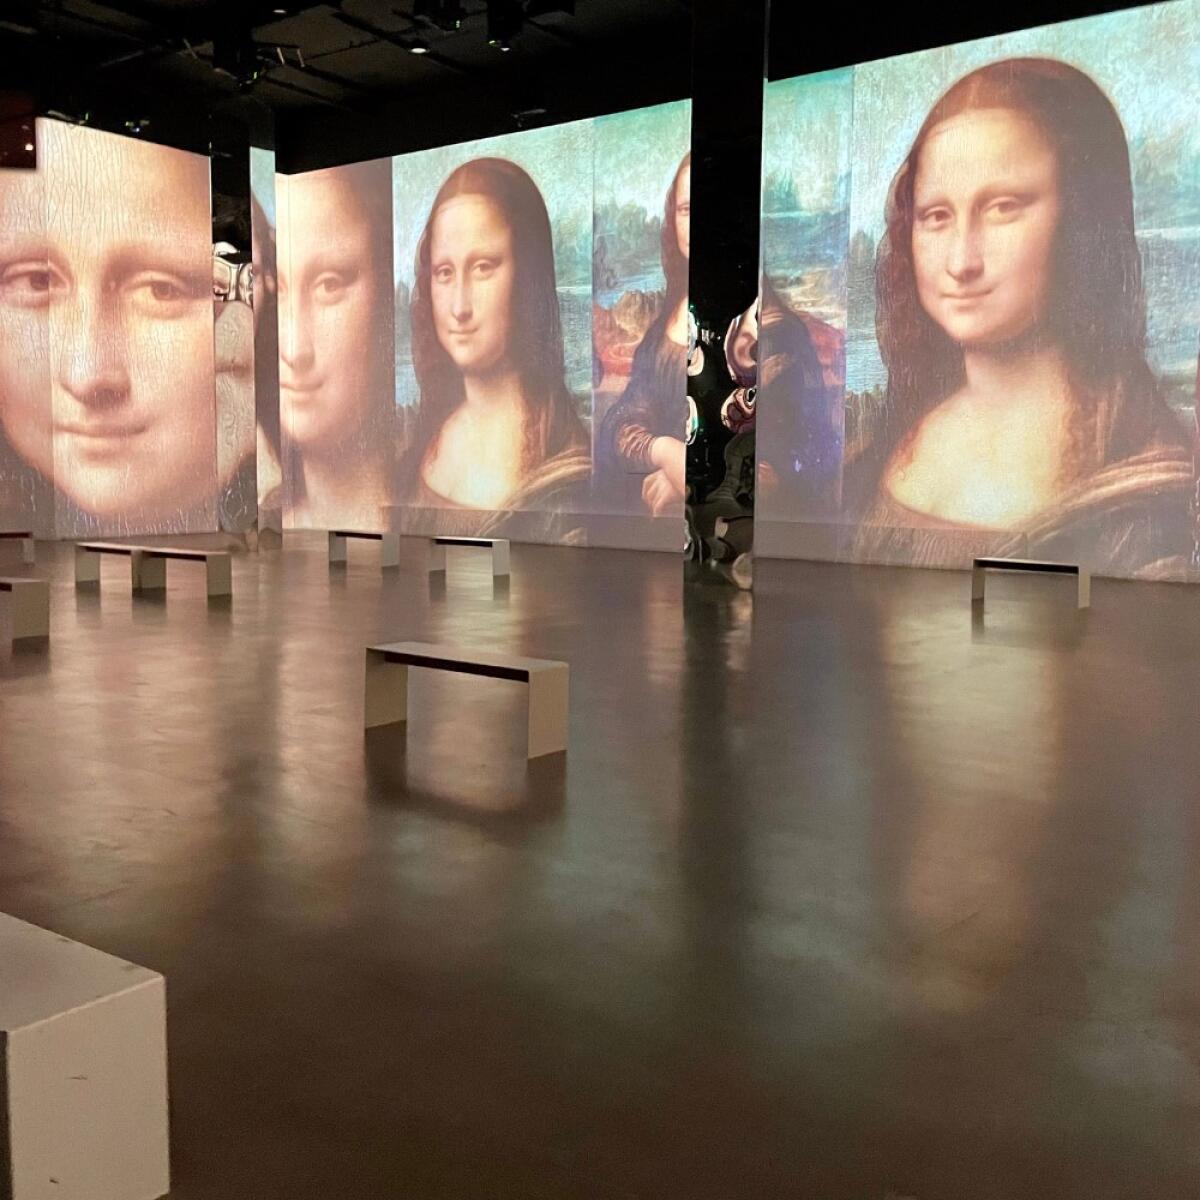 Vista de la exhibición inmersiva "Leonardo: The Universal Man Los Angeles".